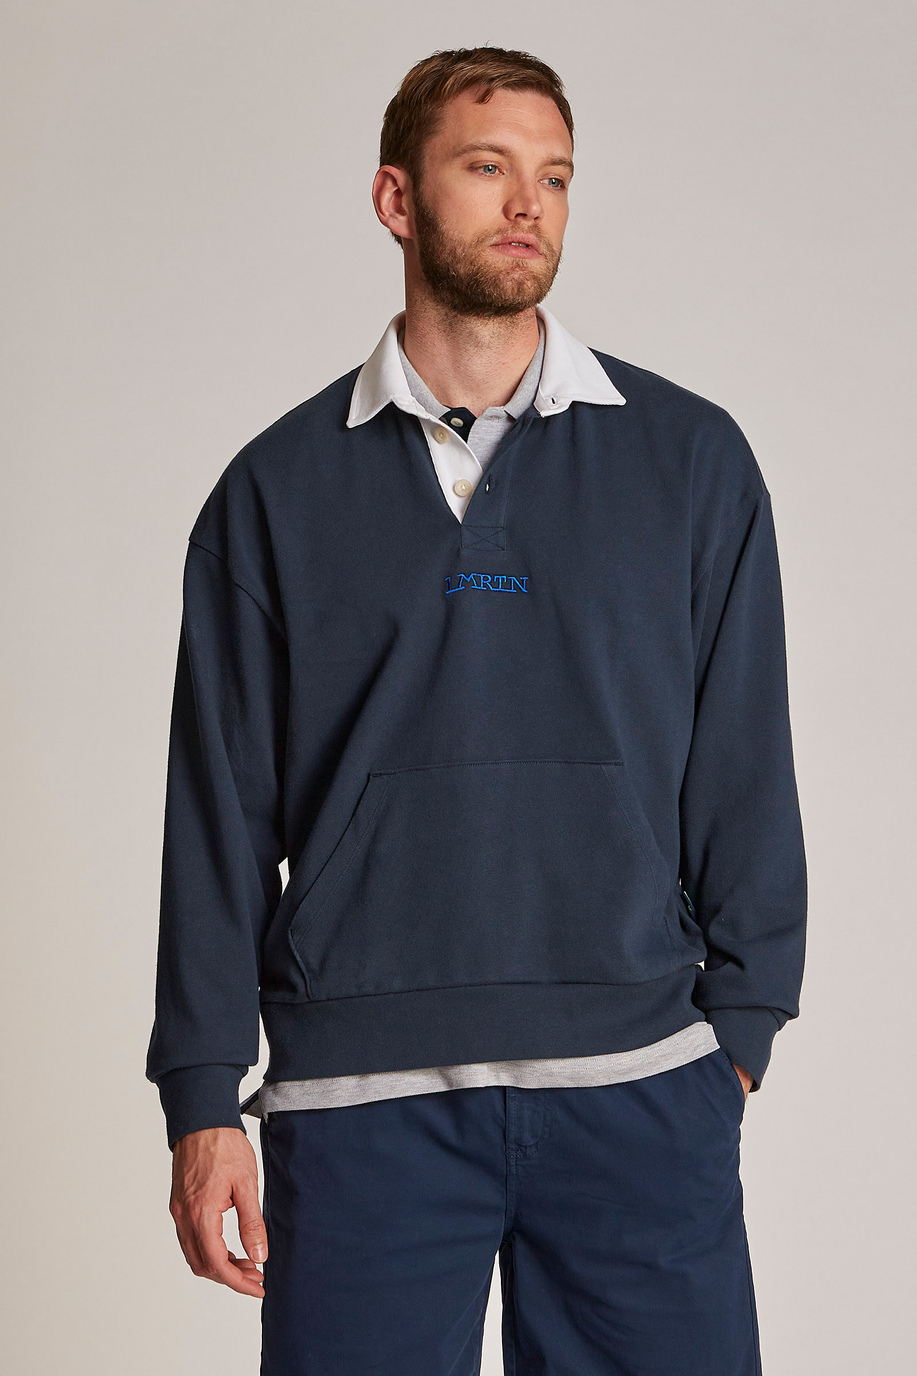 Herren-Sweatshirt aus 100 % Baumwolle mit einem Kragen in Kontrastoptik, oversized Modell - Inspiration | La Martina - Official Online Shop